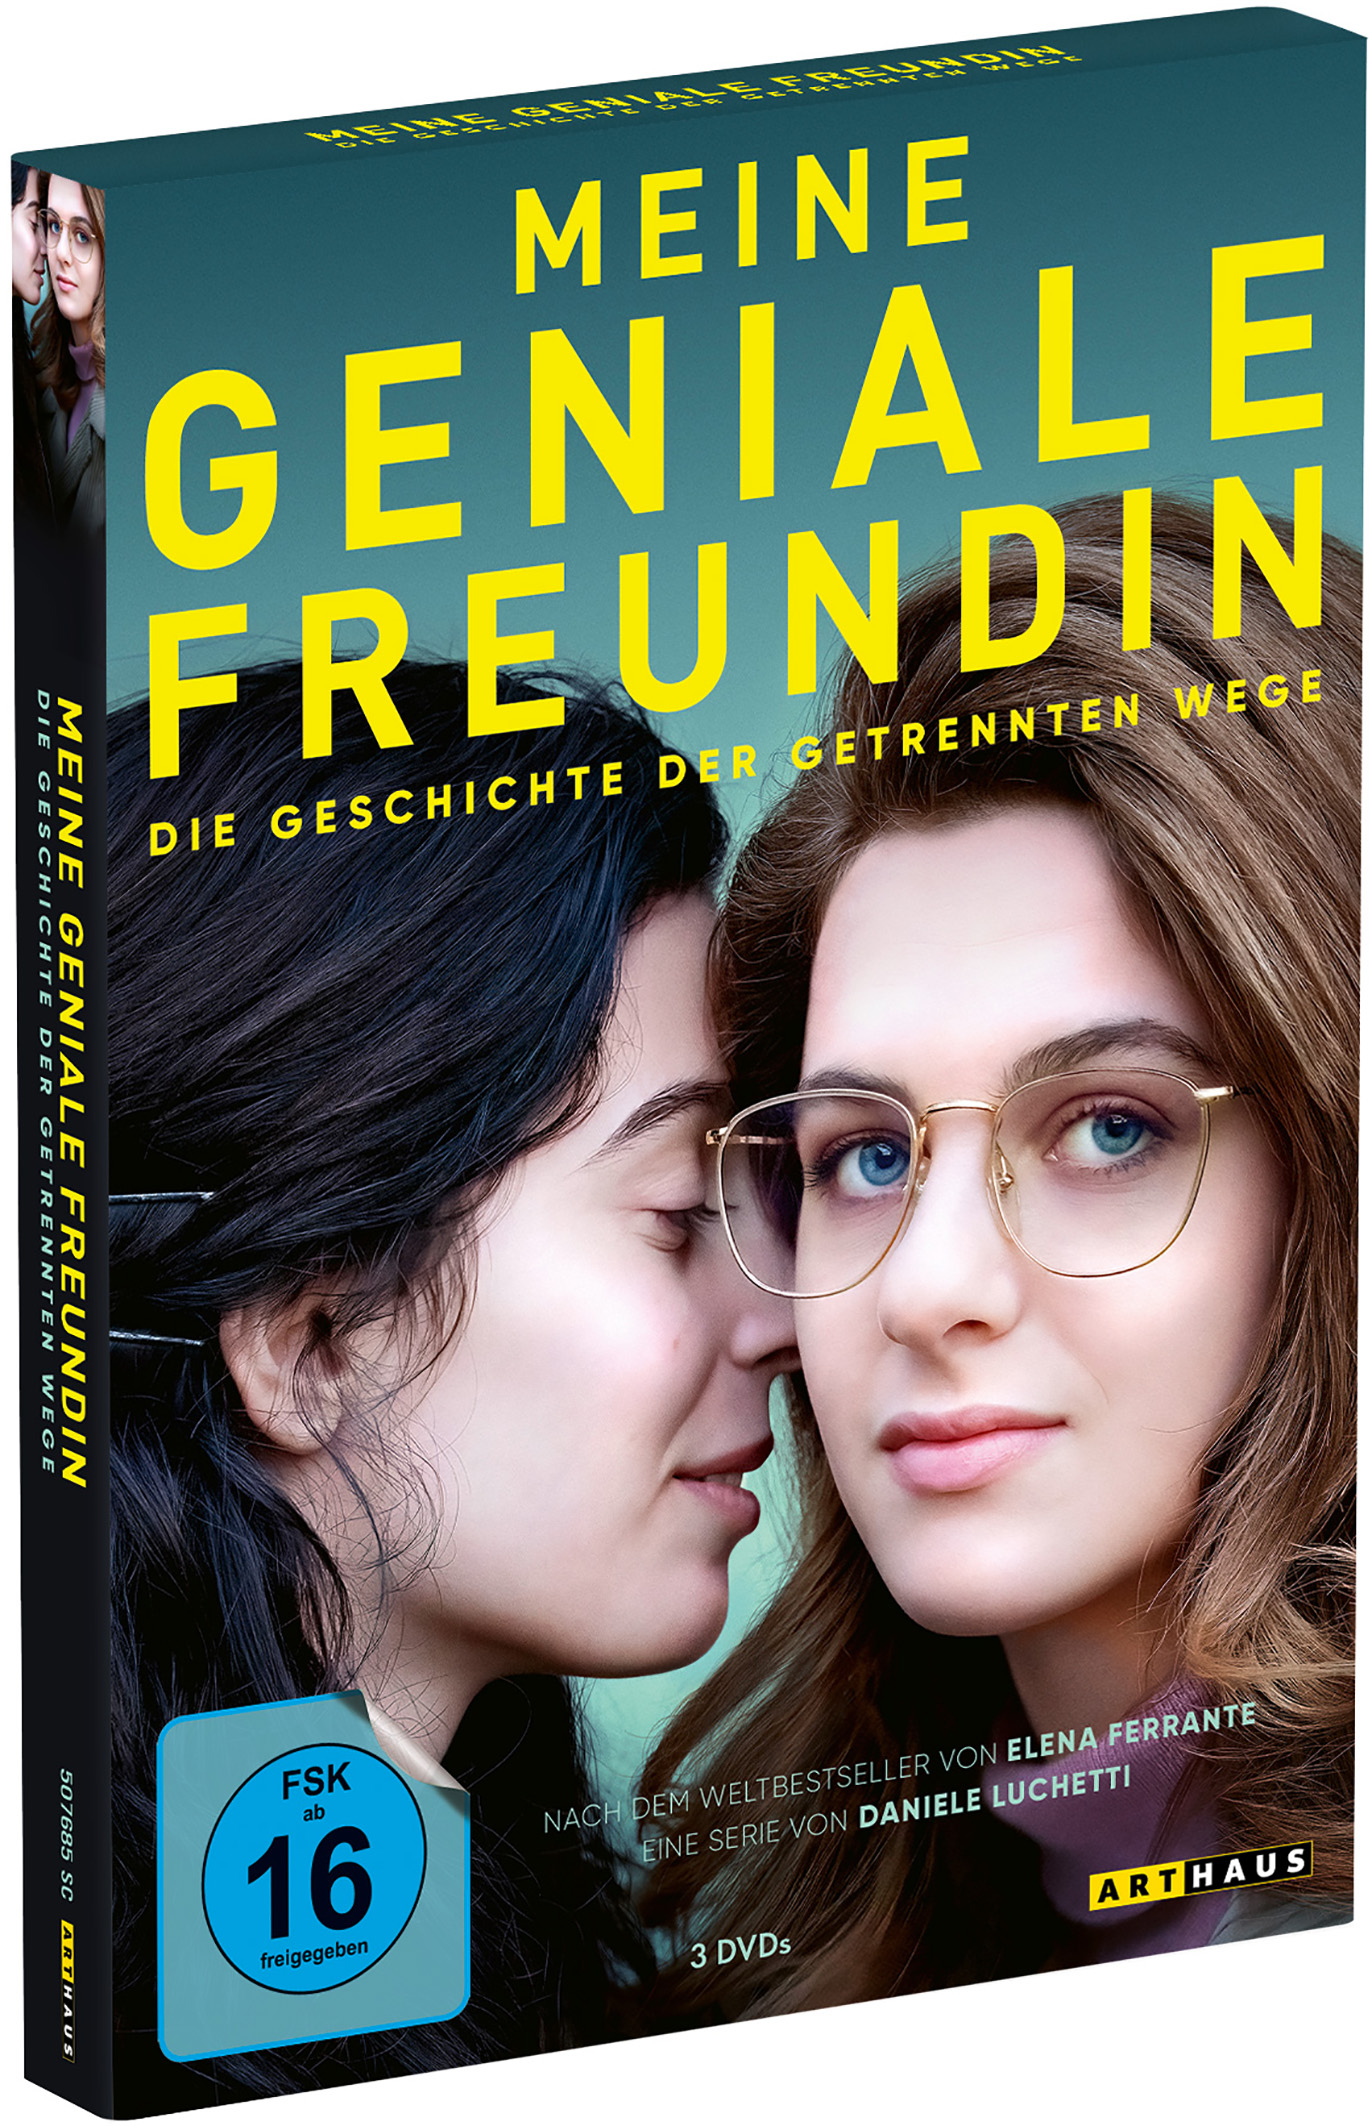 Meine geniale Freundin - Die getrennten der 3 - Geschichte DVD Staffel Wege